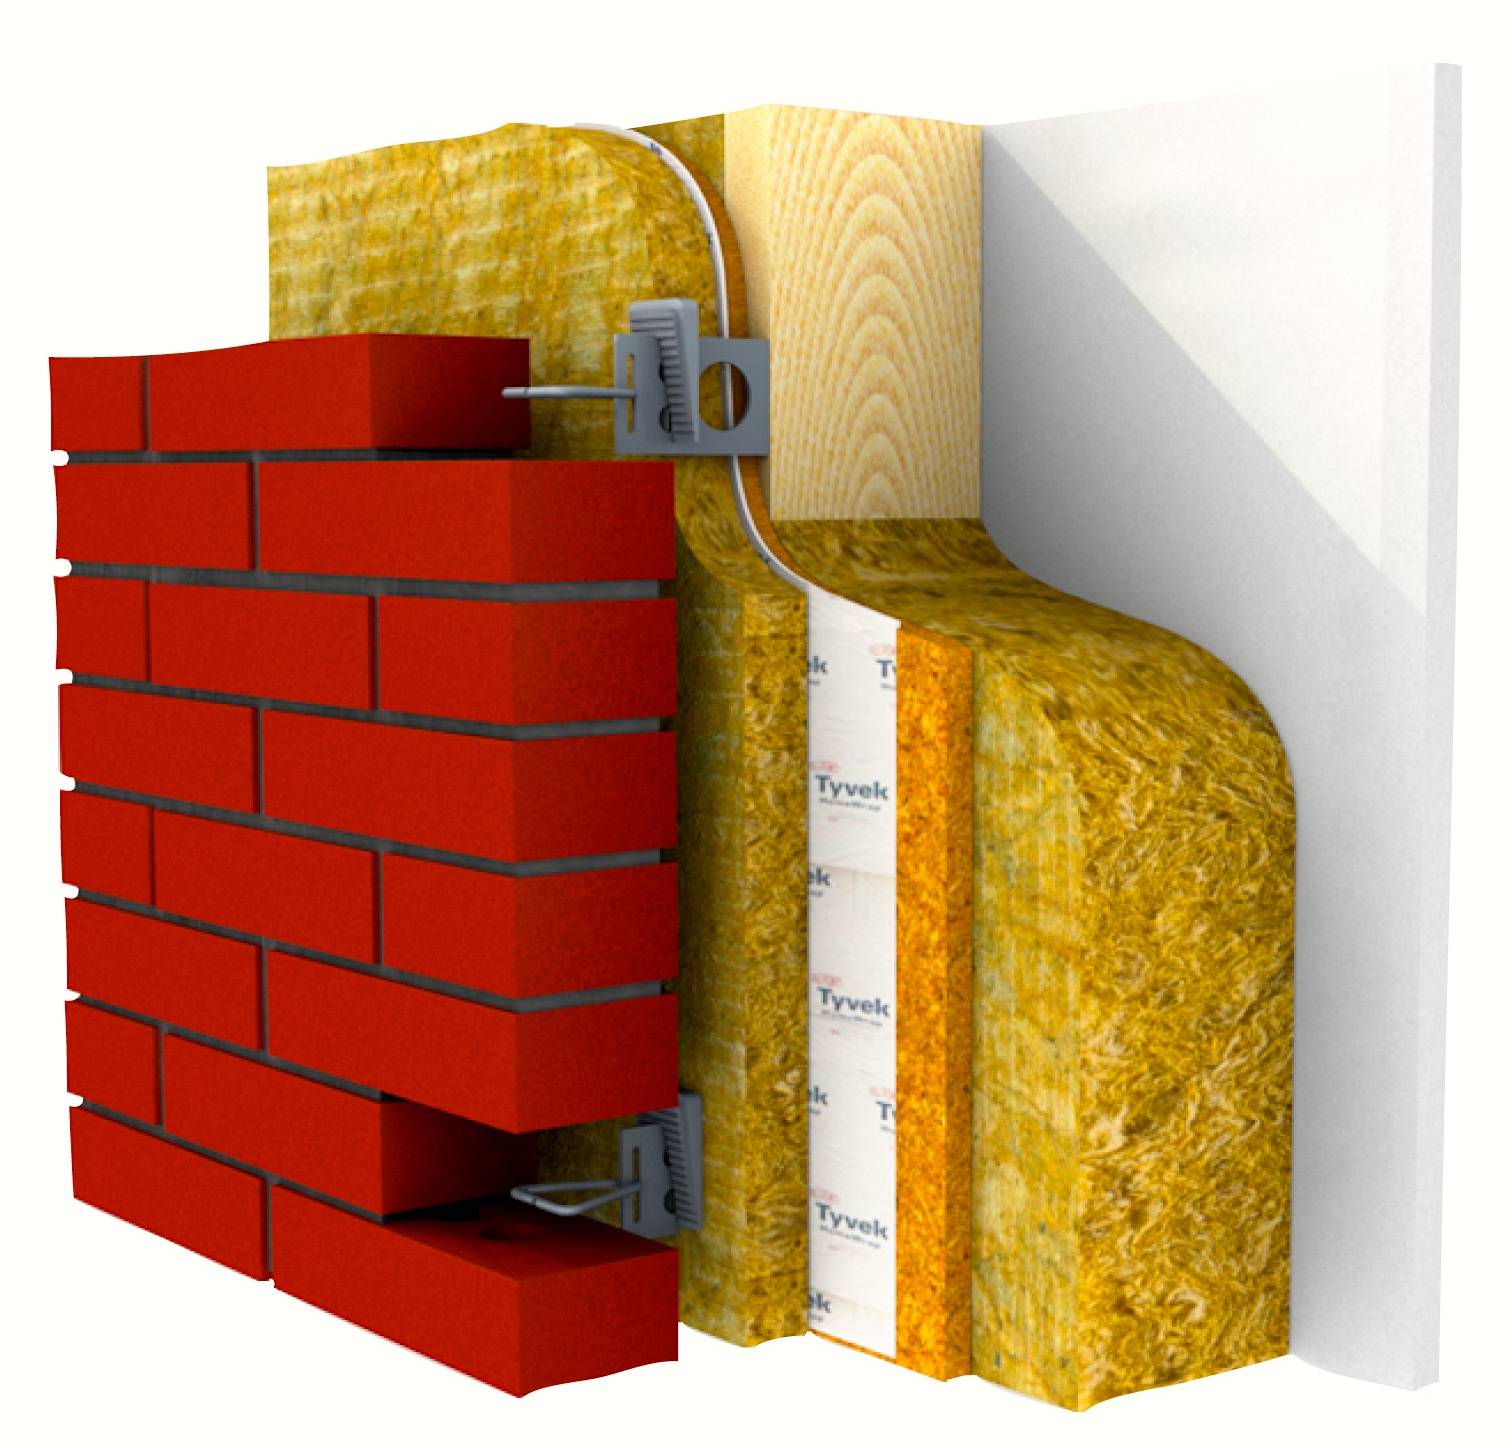 Утепление кирпичного дома: как сделать изоляцию стен